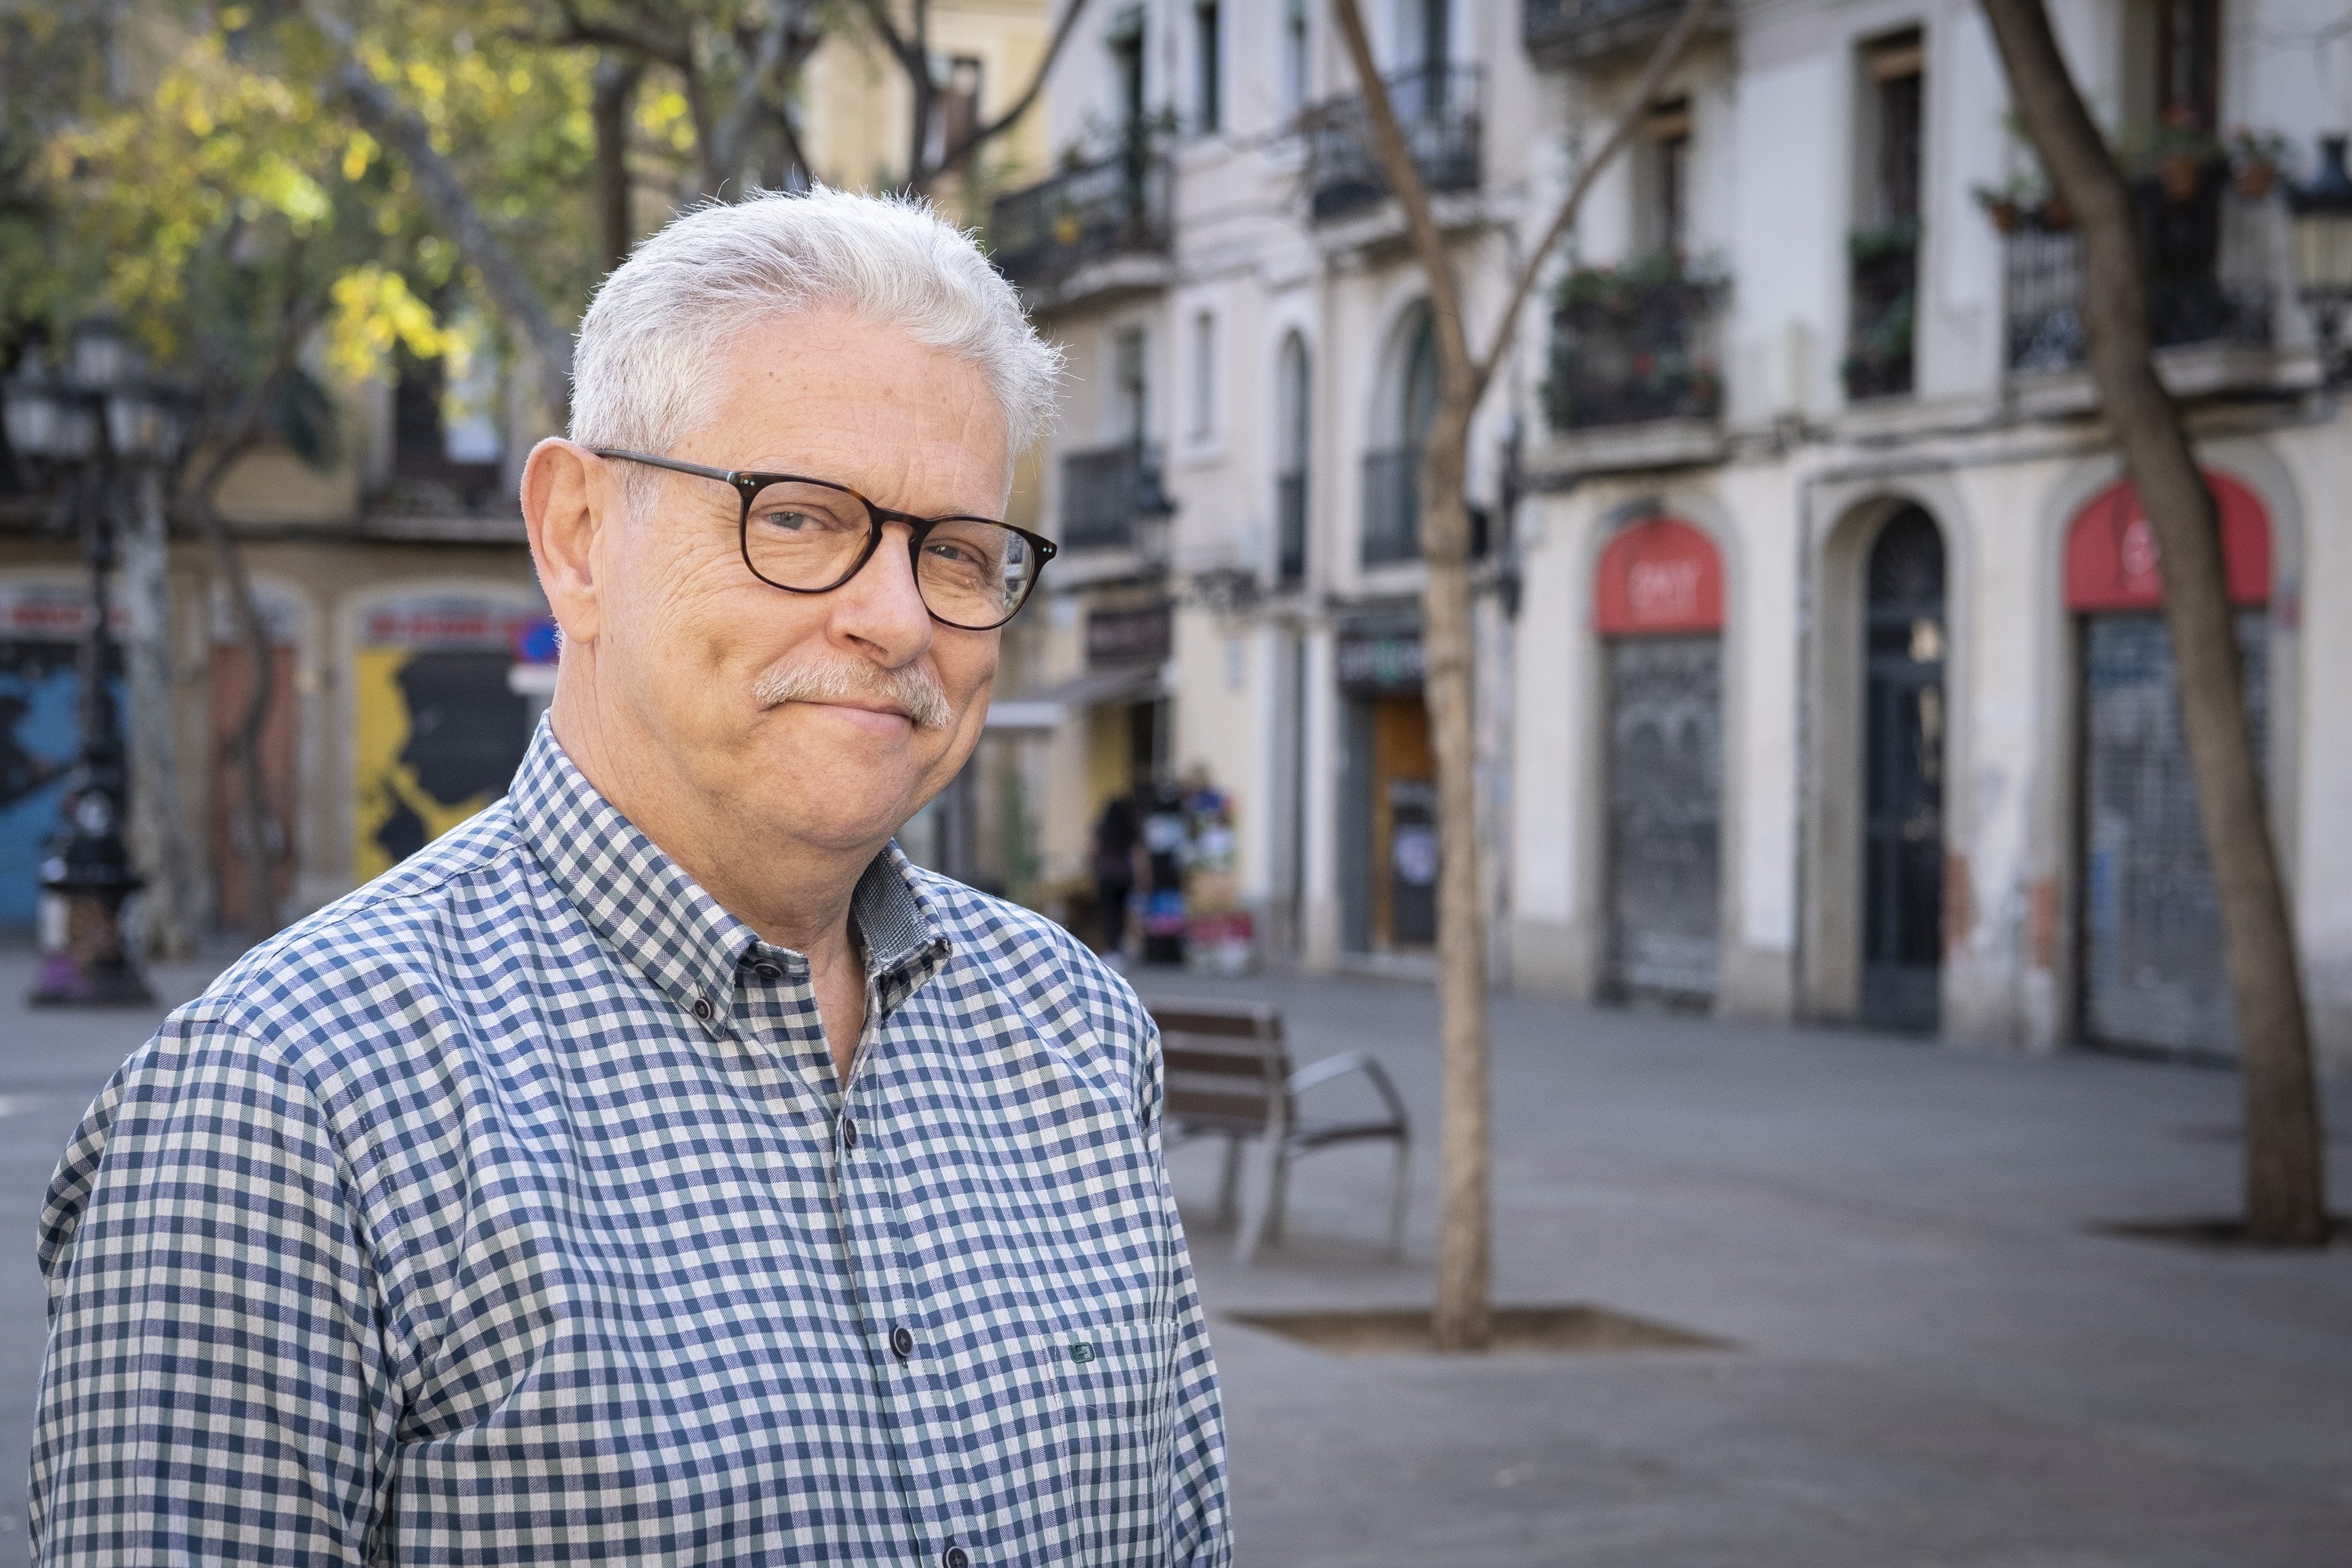 Entrevista president La volta catalunya, Rubén Peris / Foto: Carlos Baglietto